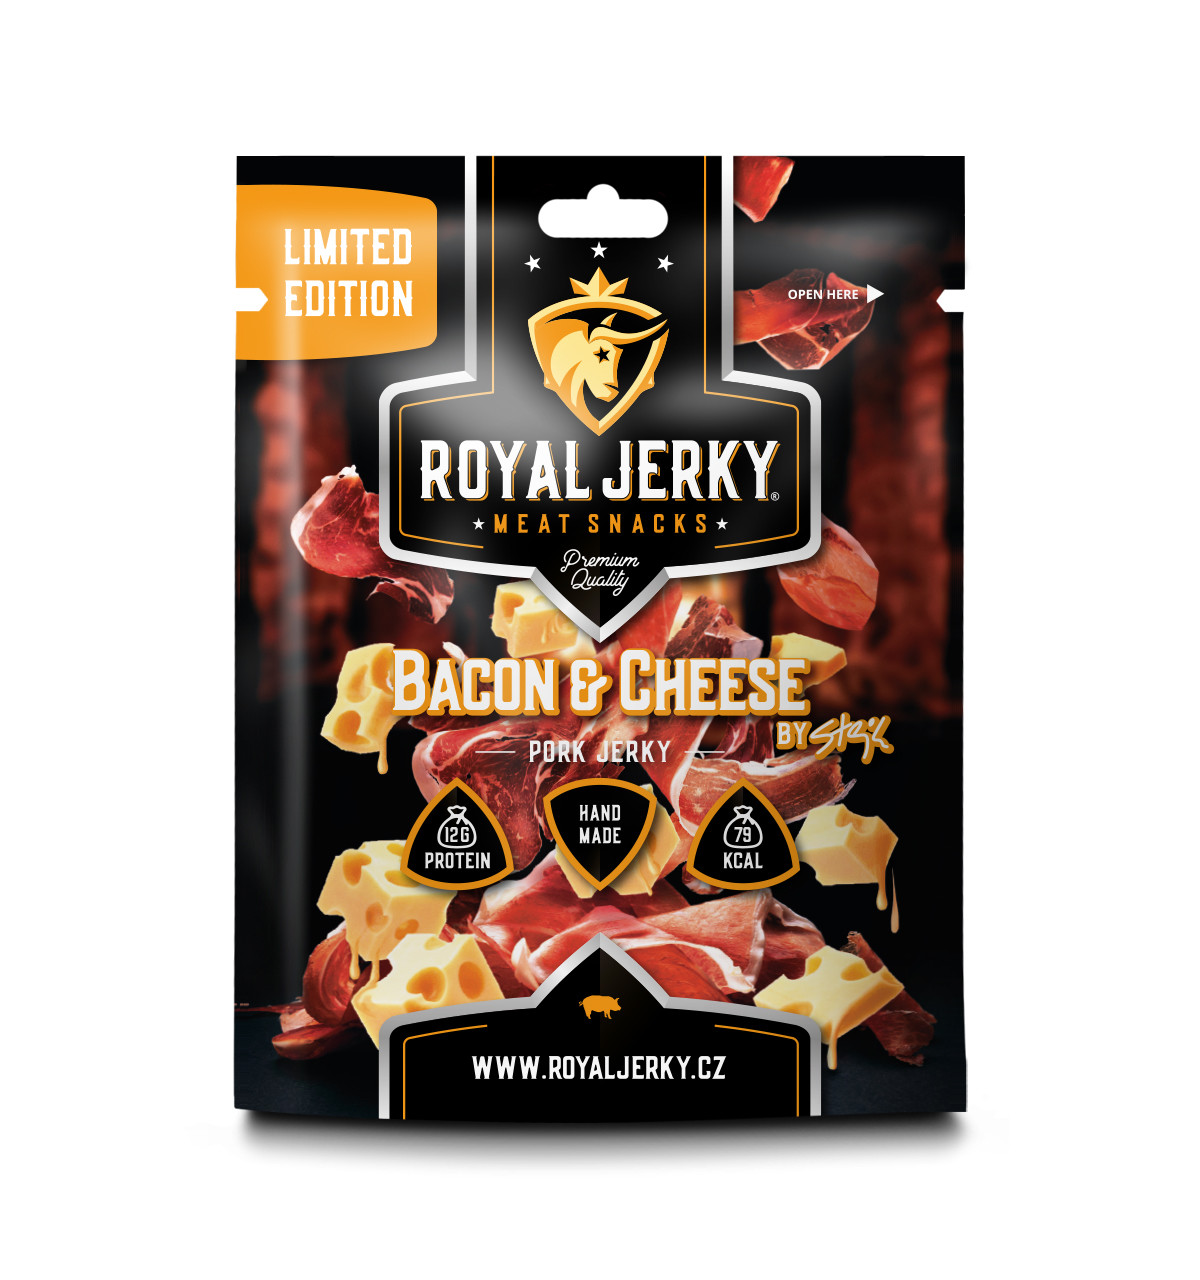 Royal Jerky Bacon&Cheese by Stejk (vepřové sušené maso s příchutí slaniny a sýru)